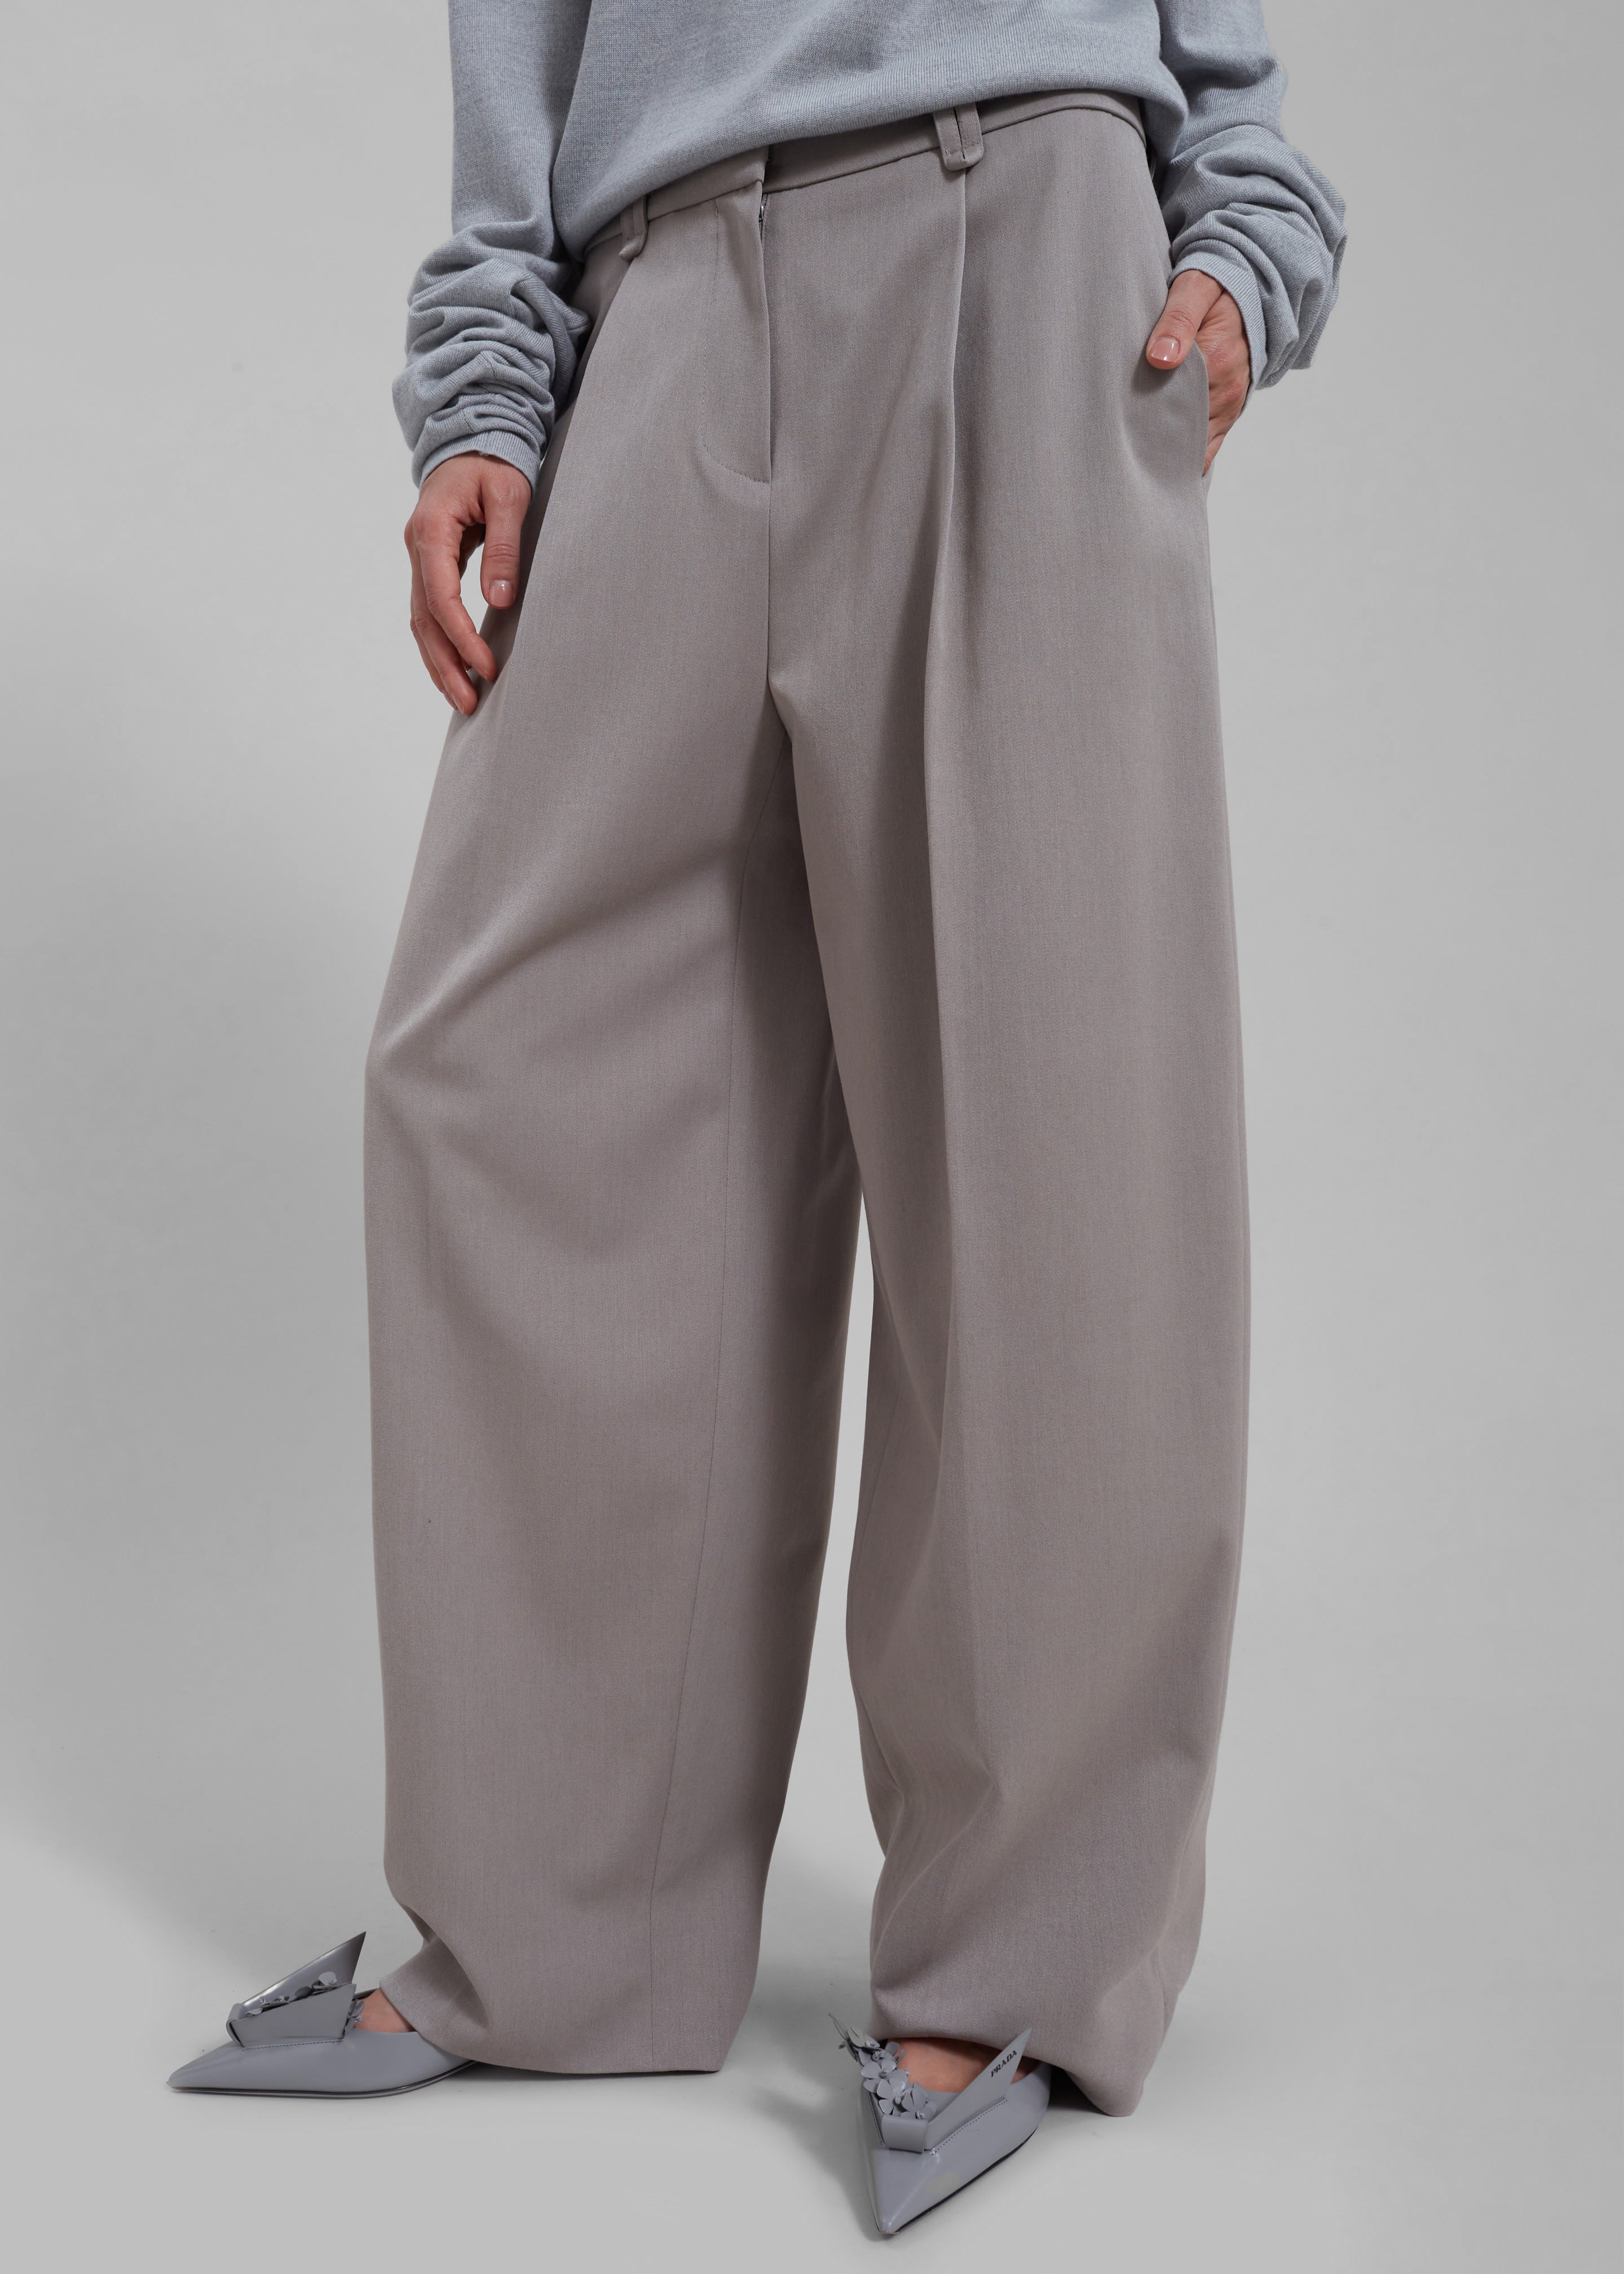 Adair Trousers - Grey - 2